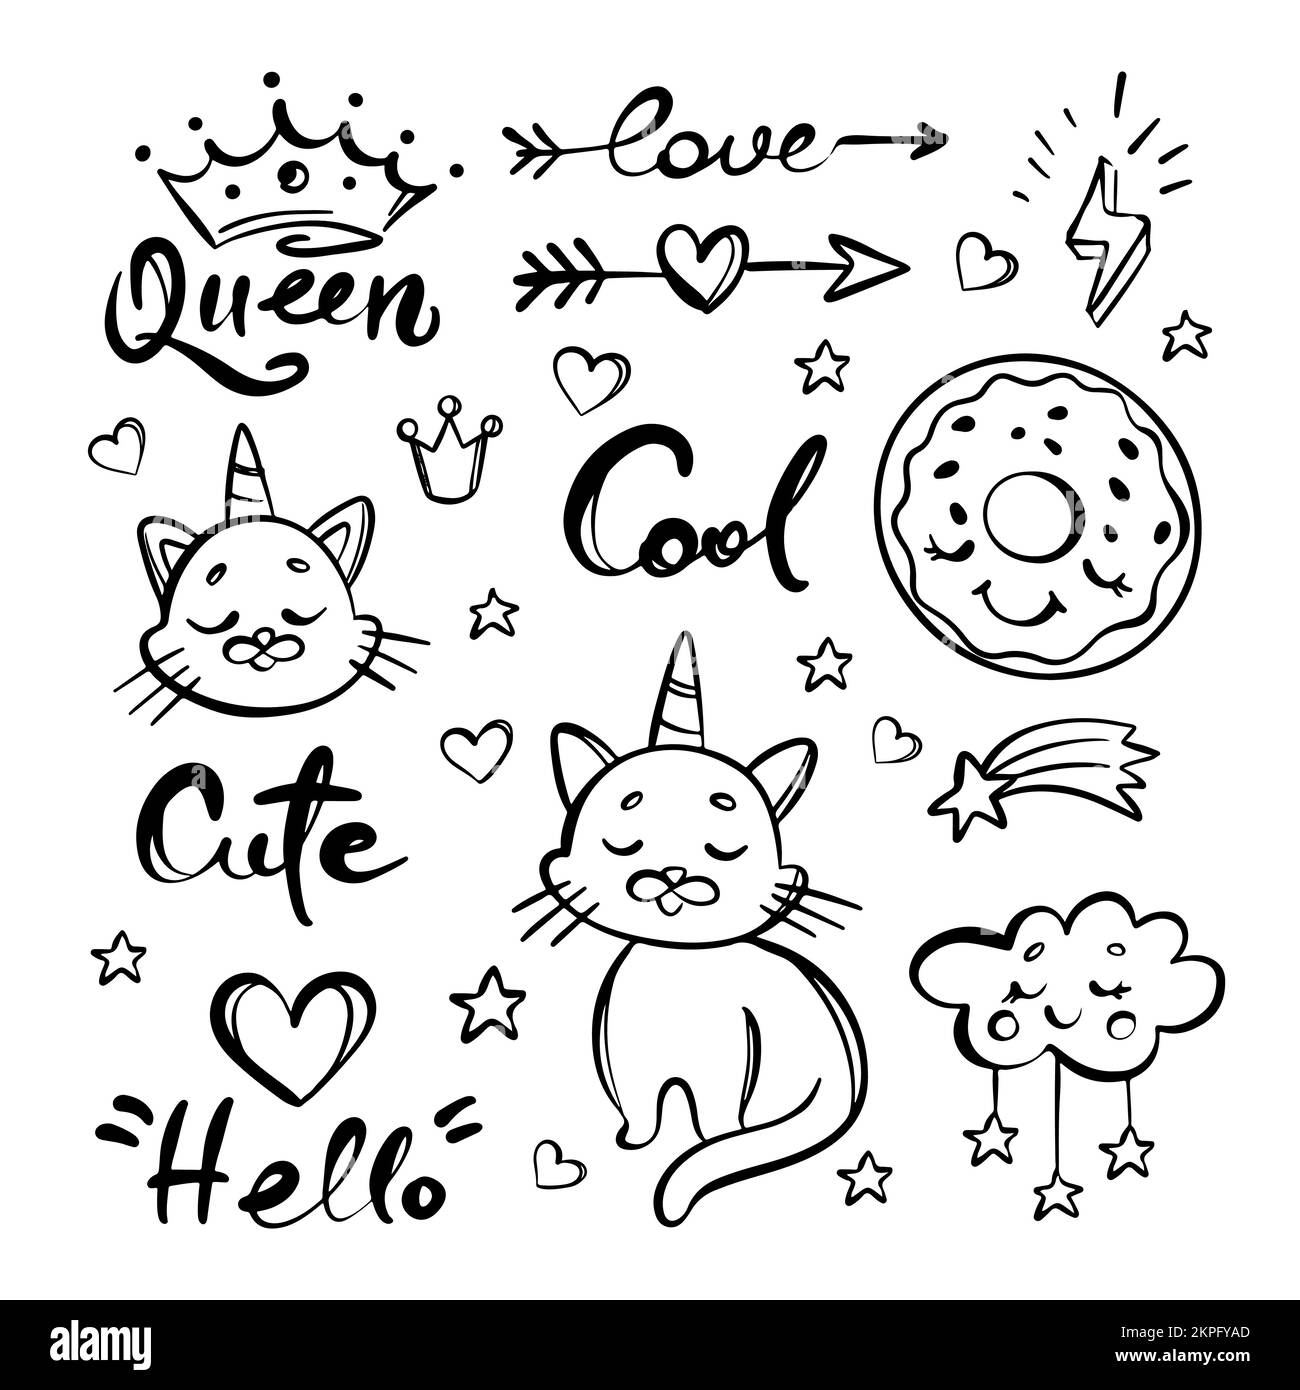 UNICORN CAT dessin à la main Doodle mignon Kitten Horn Head Donut Crown coeur Cloud manuscrit Mottos Monochrome Design Collection Cartoon Vector Illu Illustration de Vecteur